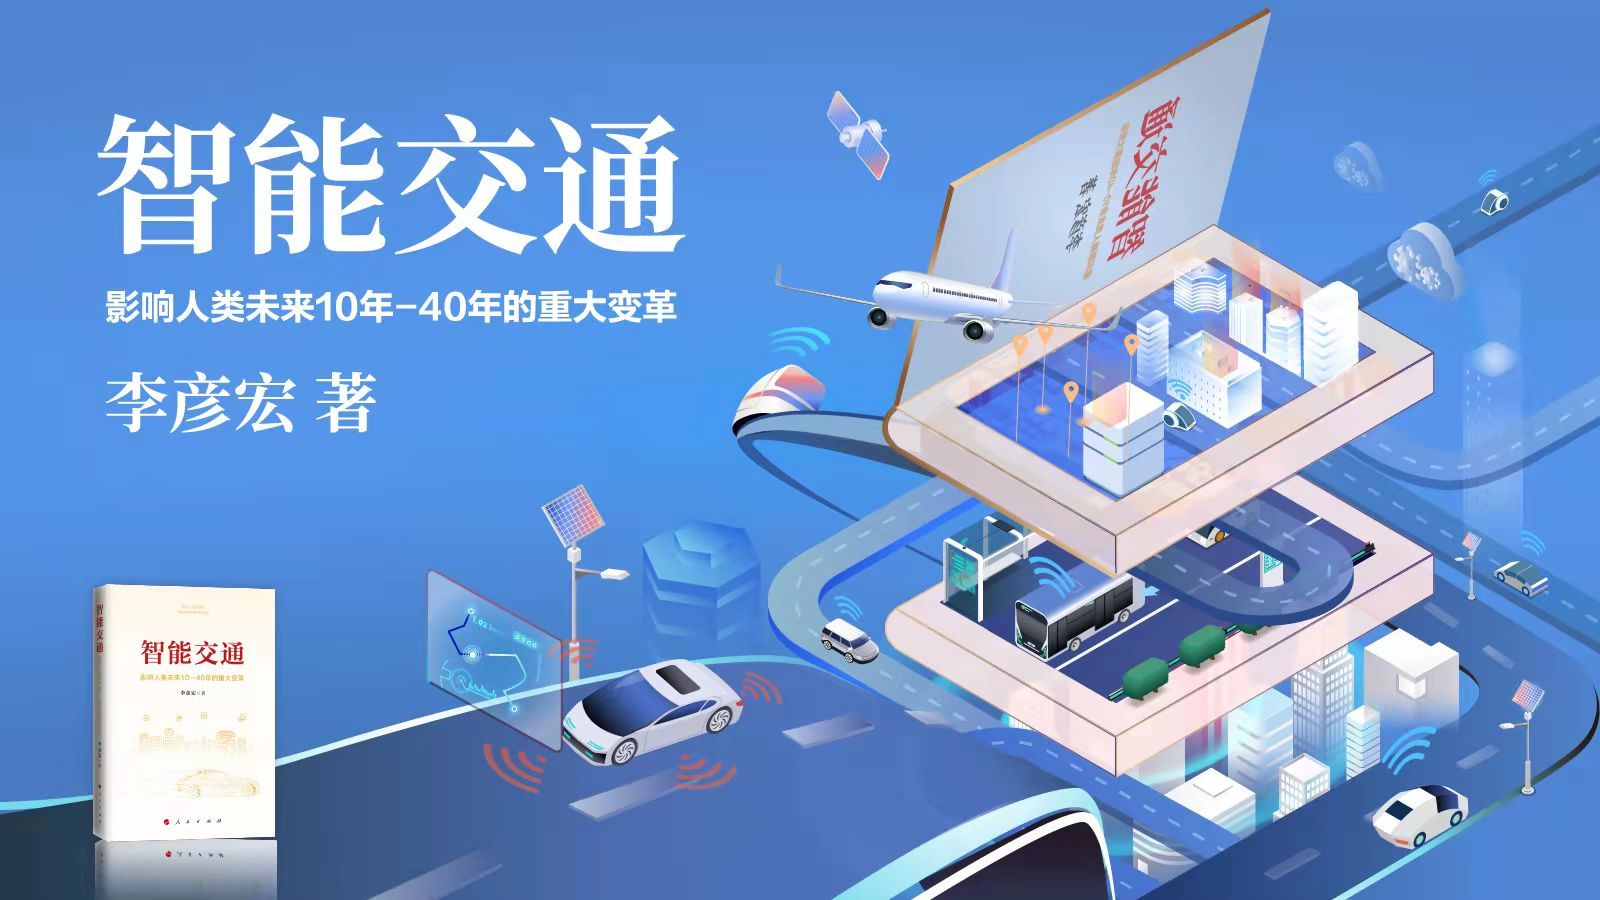 《智能交通》正式出版发行，全面阐述智能交通“中国模式”